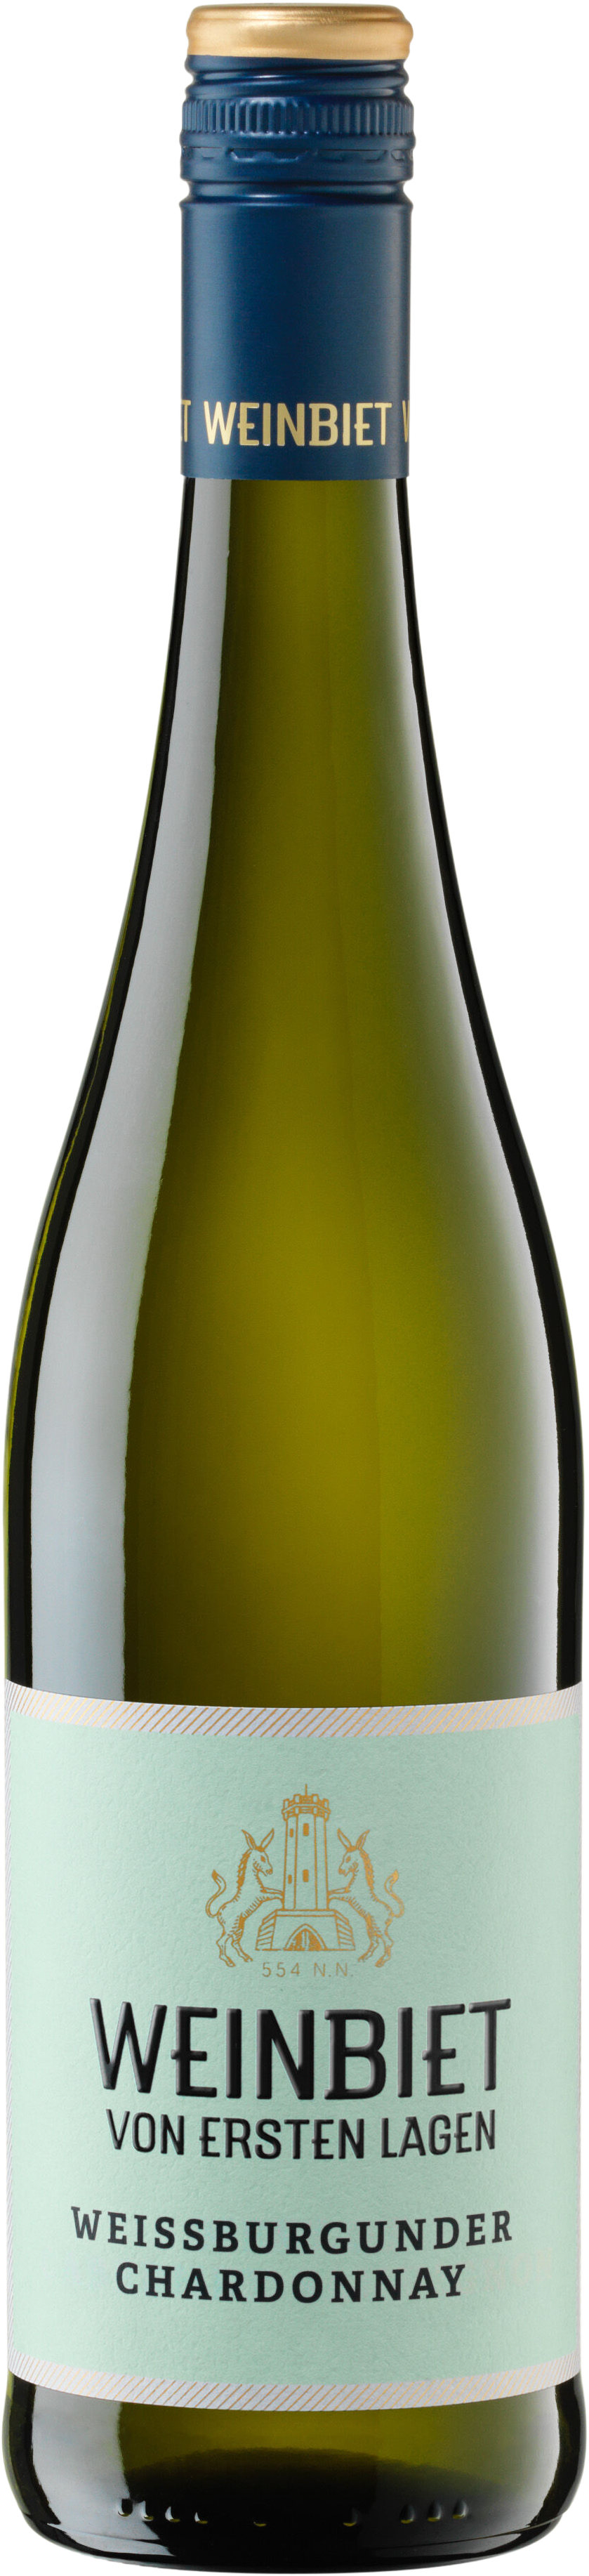 VEL Weißburgunder Chardonnay